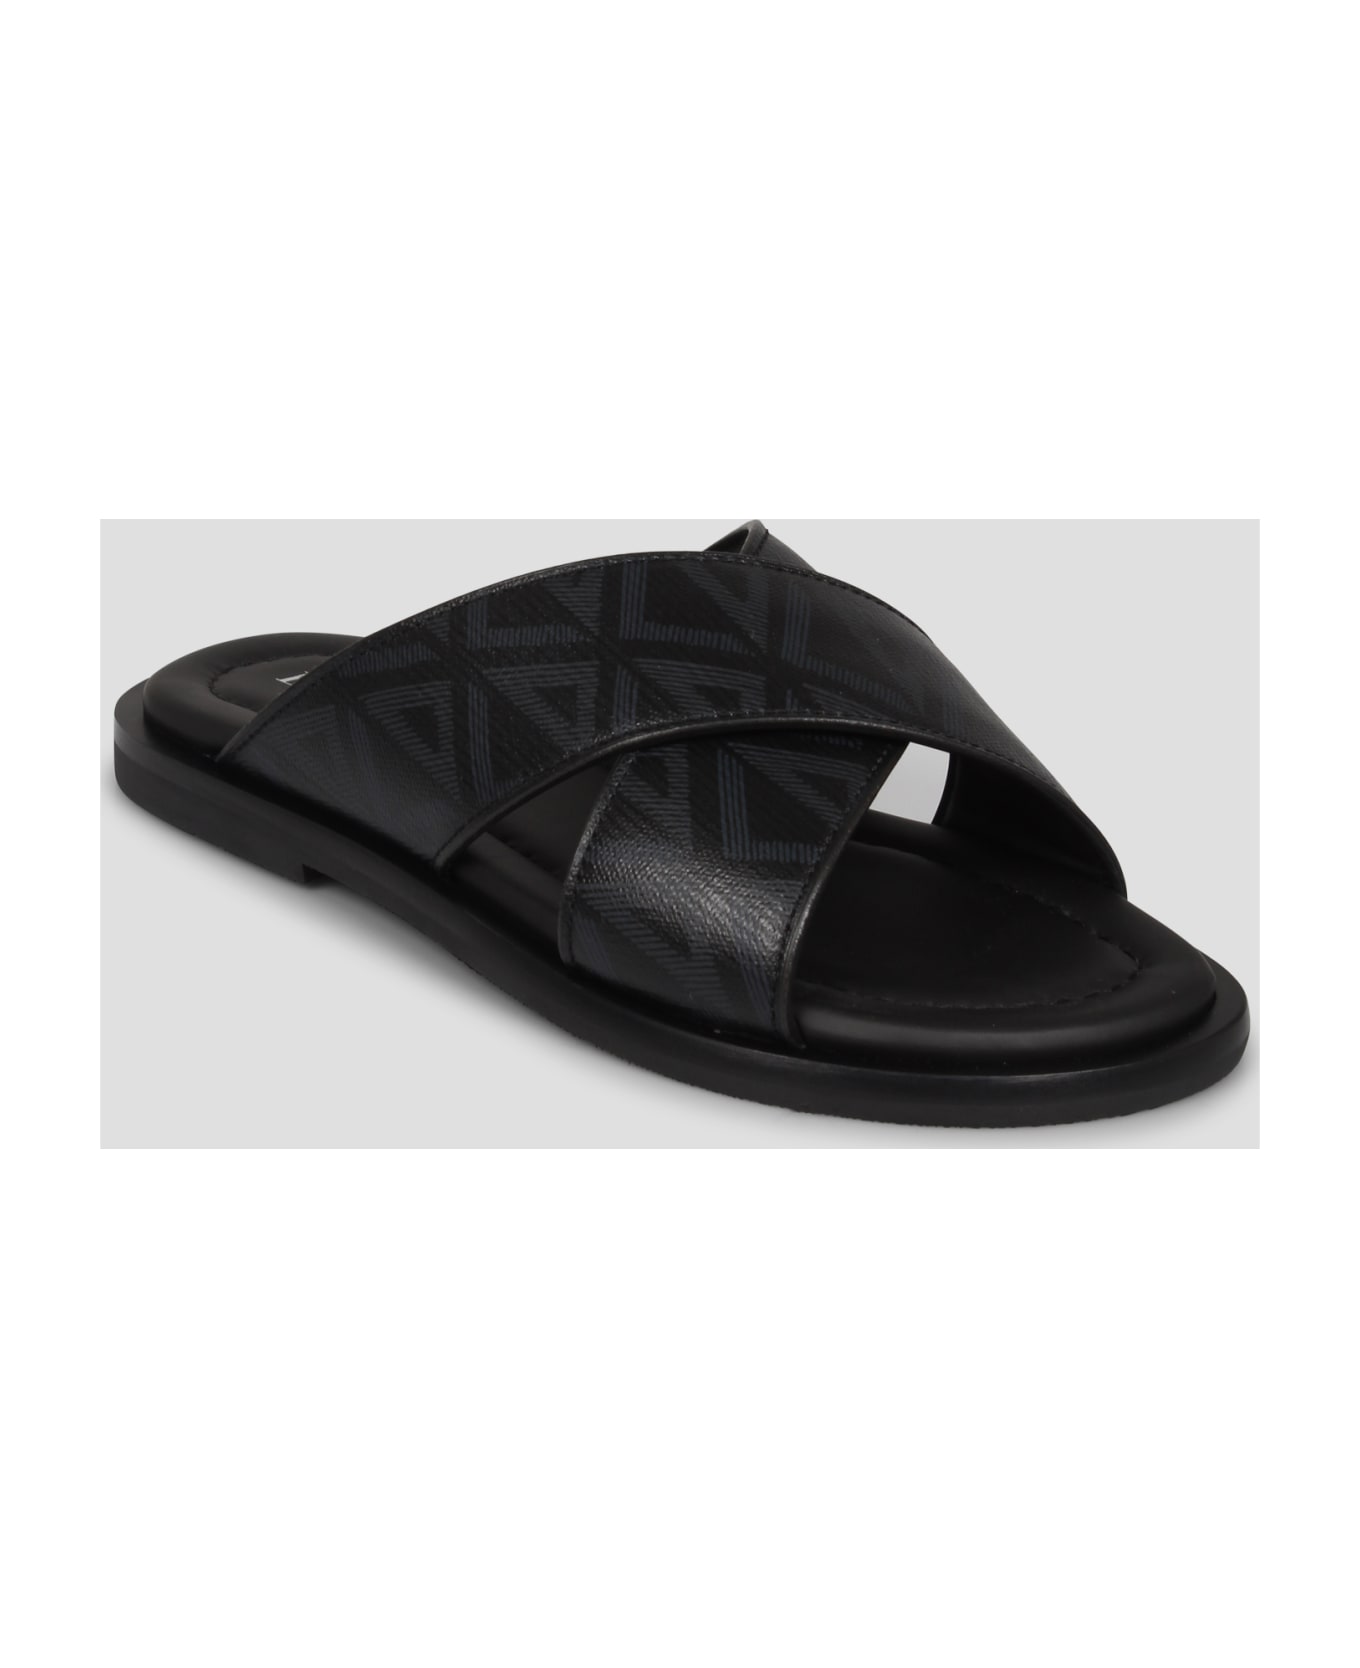 Dior Flat Sandals - Black